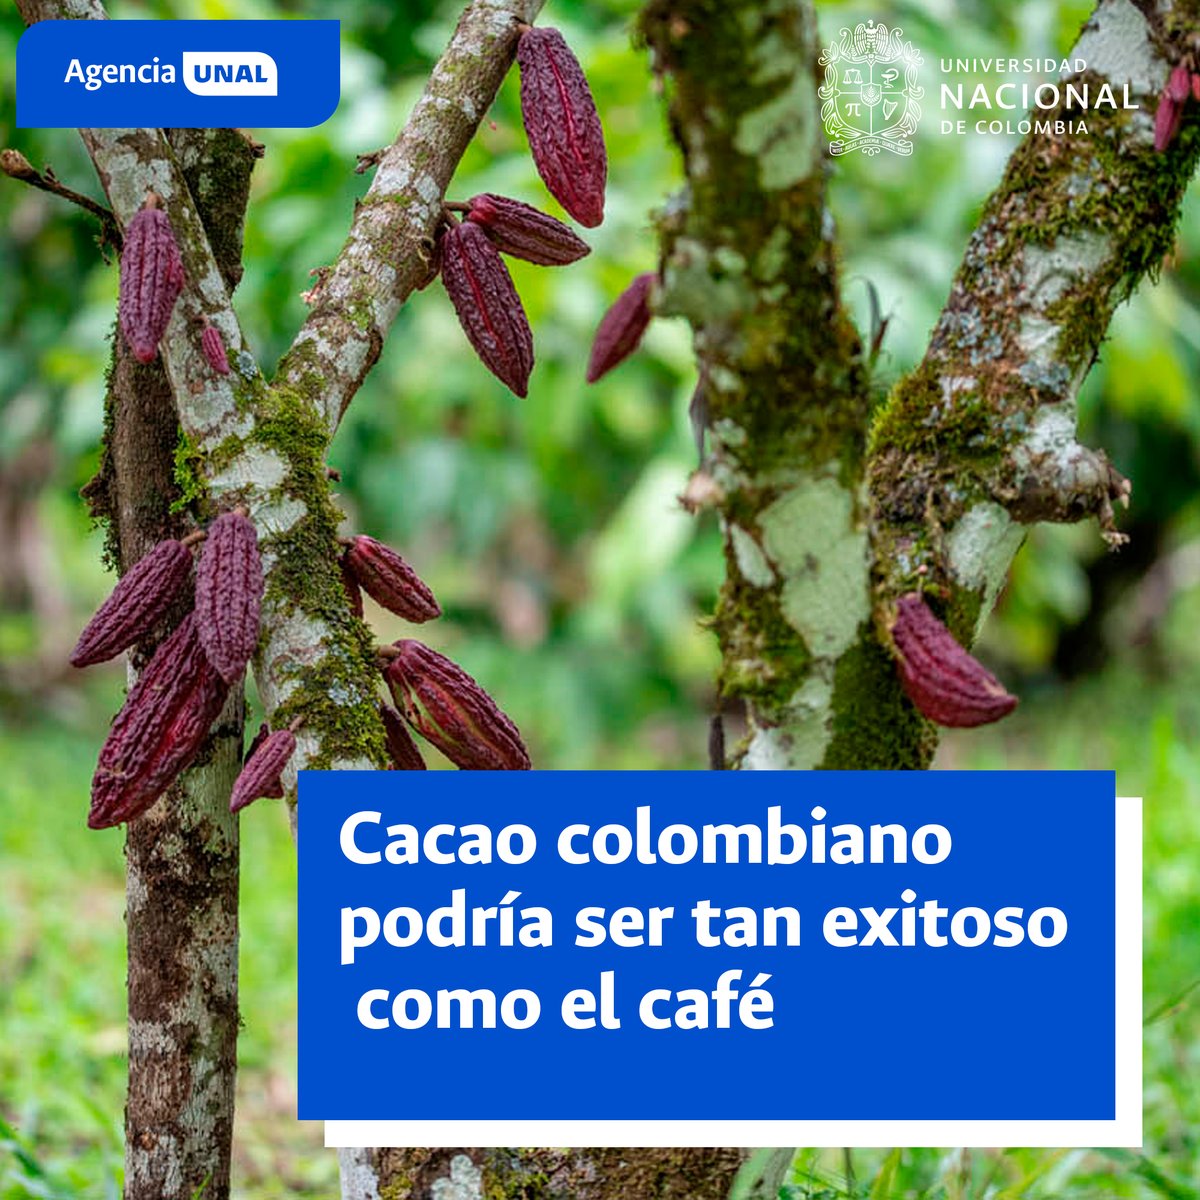 #AgenciaUNAL | Pasar de 500 kilos de producción de Cacao por hectárea a 5 toneladas es posible gracias a los avances científicos ¿Cómo? El libro Ciencia para la cacaocultura develo como aumentar la producción de la semilla se puede lograr. Detalles aquí acortar.link/8m8isc